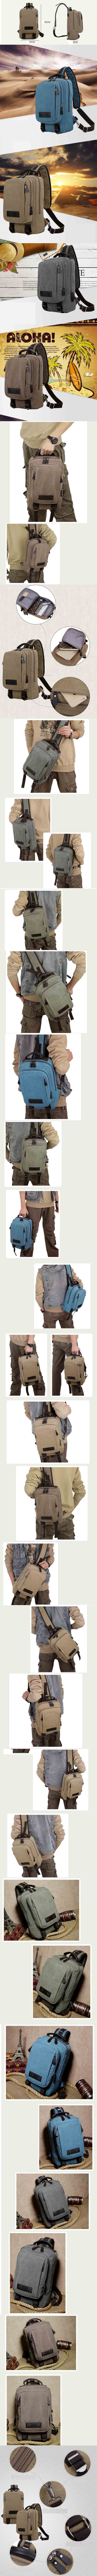 cari tas multifungsi yang bisa digunakan sebagai tas ransel , tas selempang dan tas jinjing, klik dan pesan online sekarang hanya di pfp store